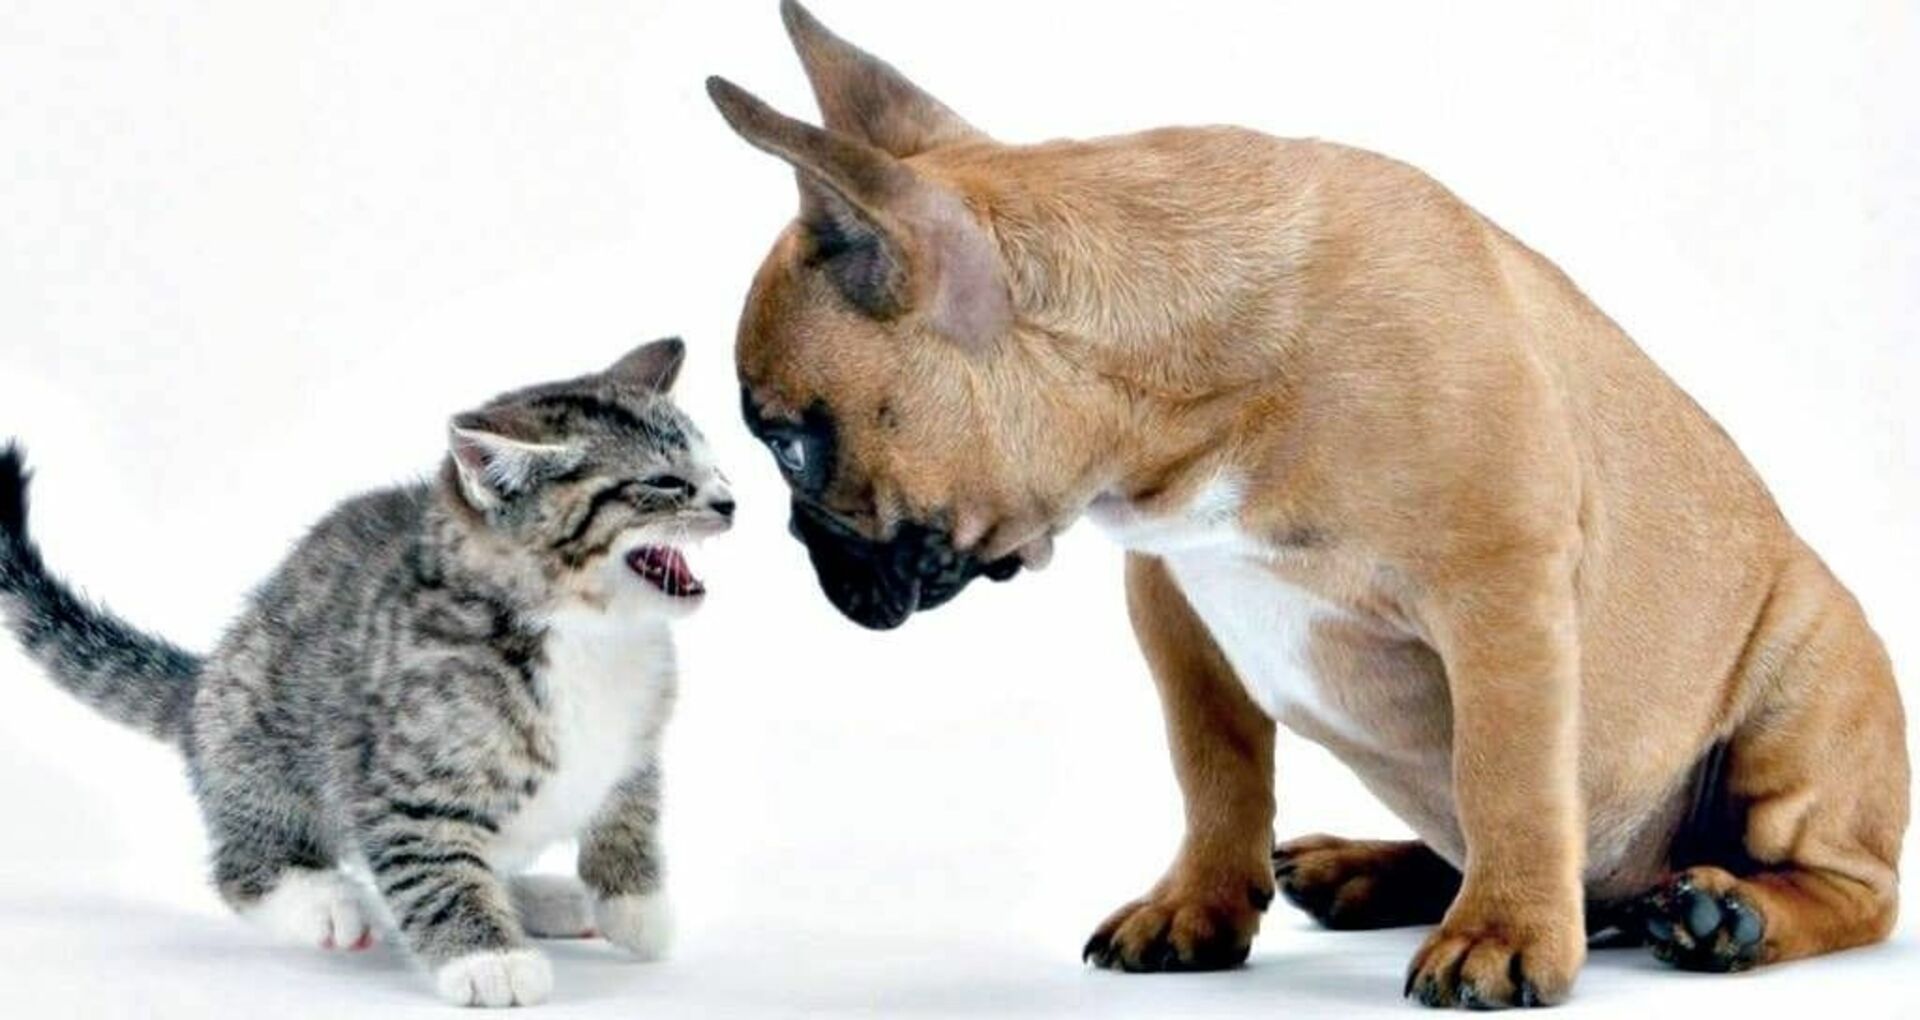 Животные породы кошек и собак. Кошки и собаки. Драка кошки и собаки. Кошка с собакой дерутся. Собака с кошкой дружат.